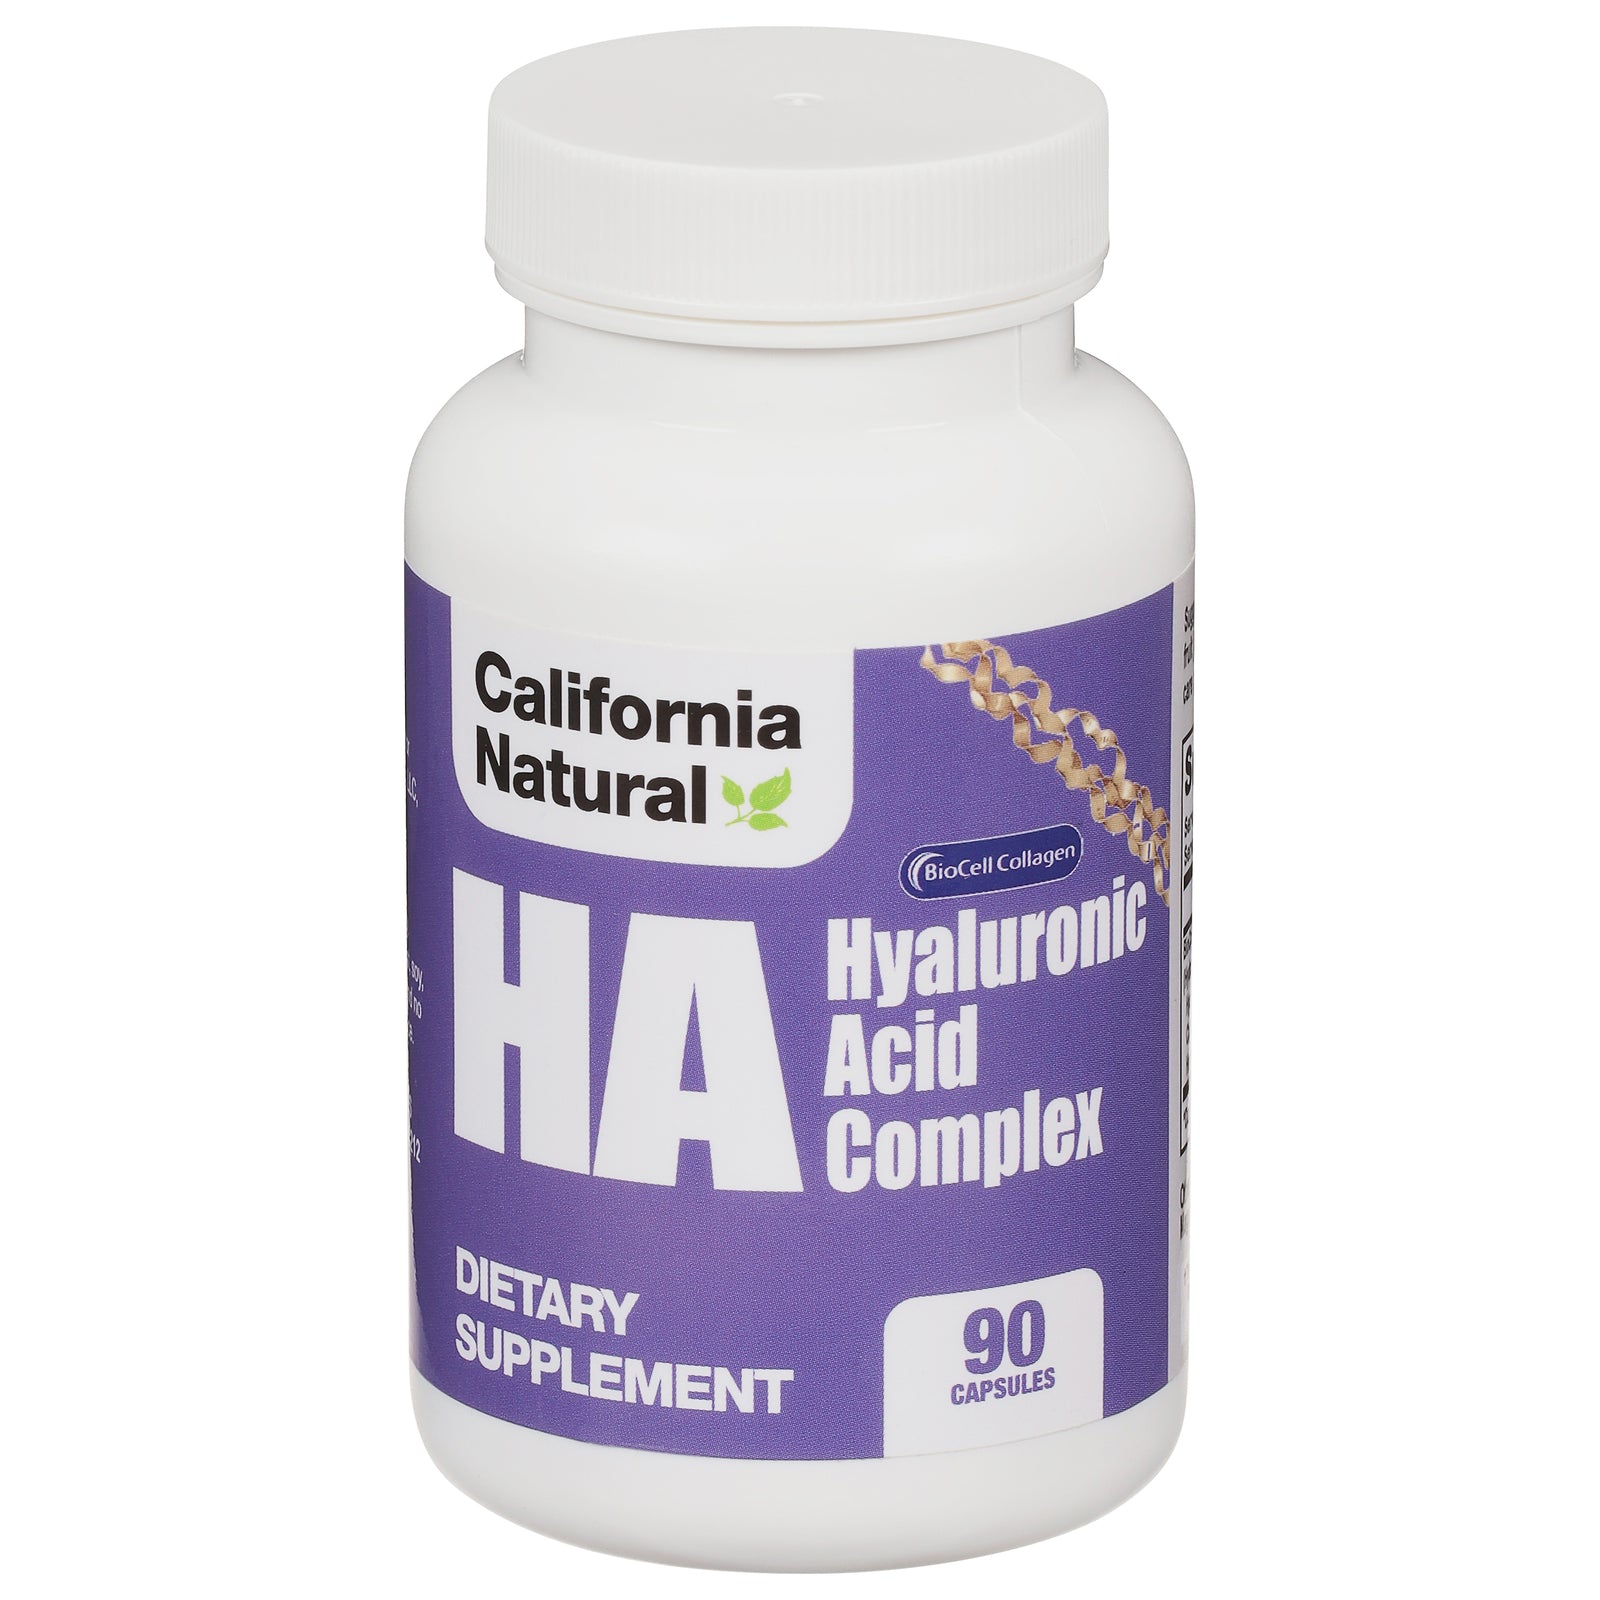 California Natural Hyaluronic Acid Formula - 90 Capsules